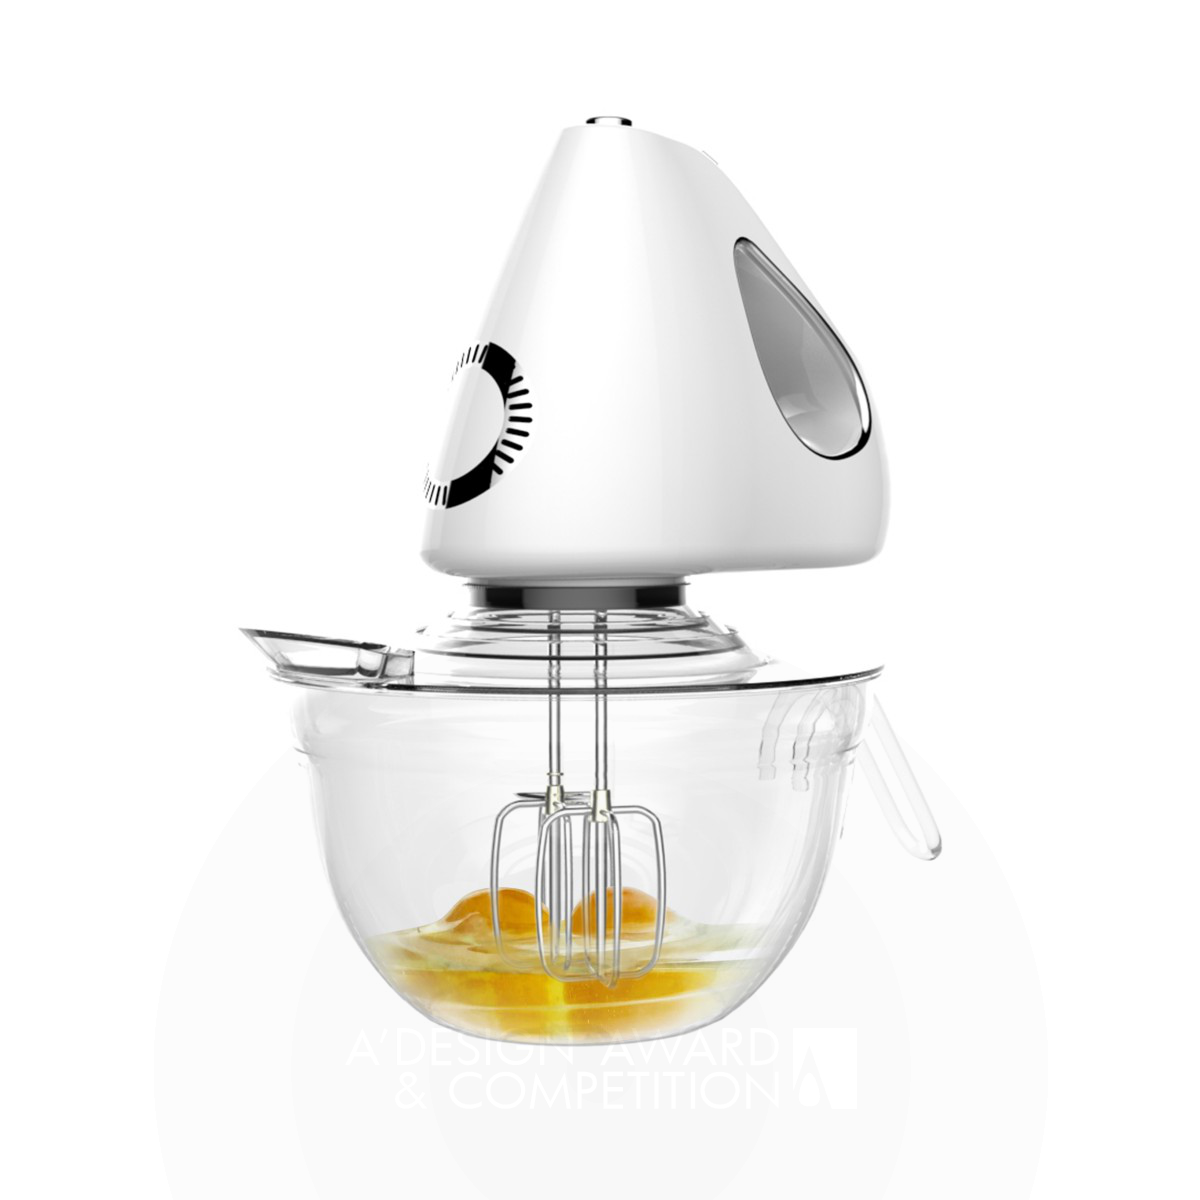 Miya Electric Egg Mixer by Wei Jingye, Jia Zhuohang and Zhao Yilin Iron Home Appliances Design Award Winner 2019 